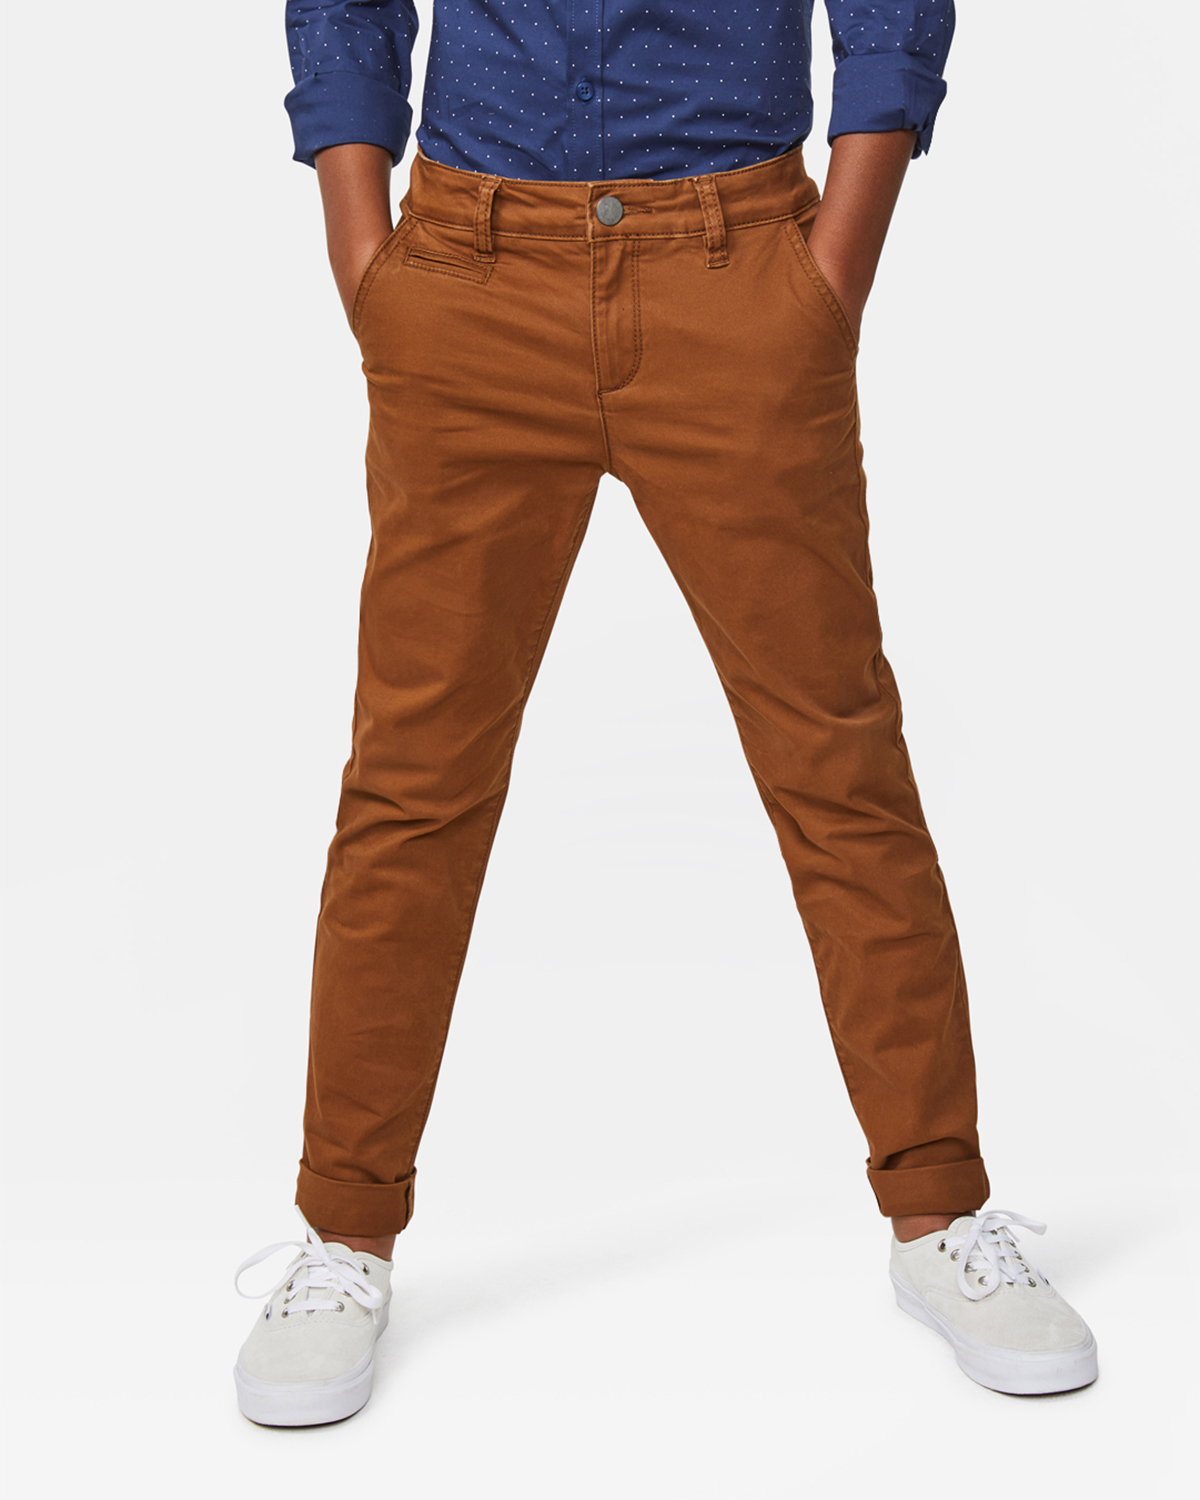 Classic Chino Y broek voor jongens. Amazon Jongens Kleding Broeken & Jeans Broeken Chino Broeken 